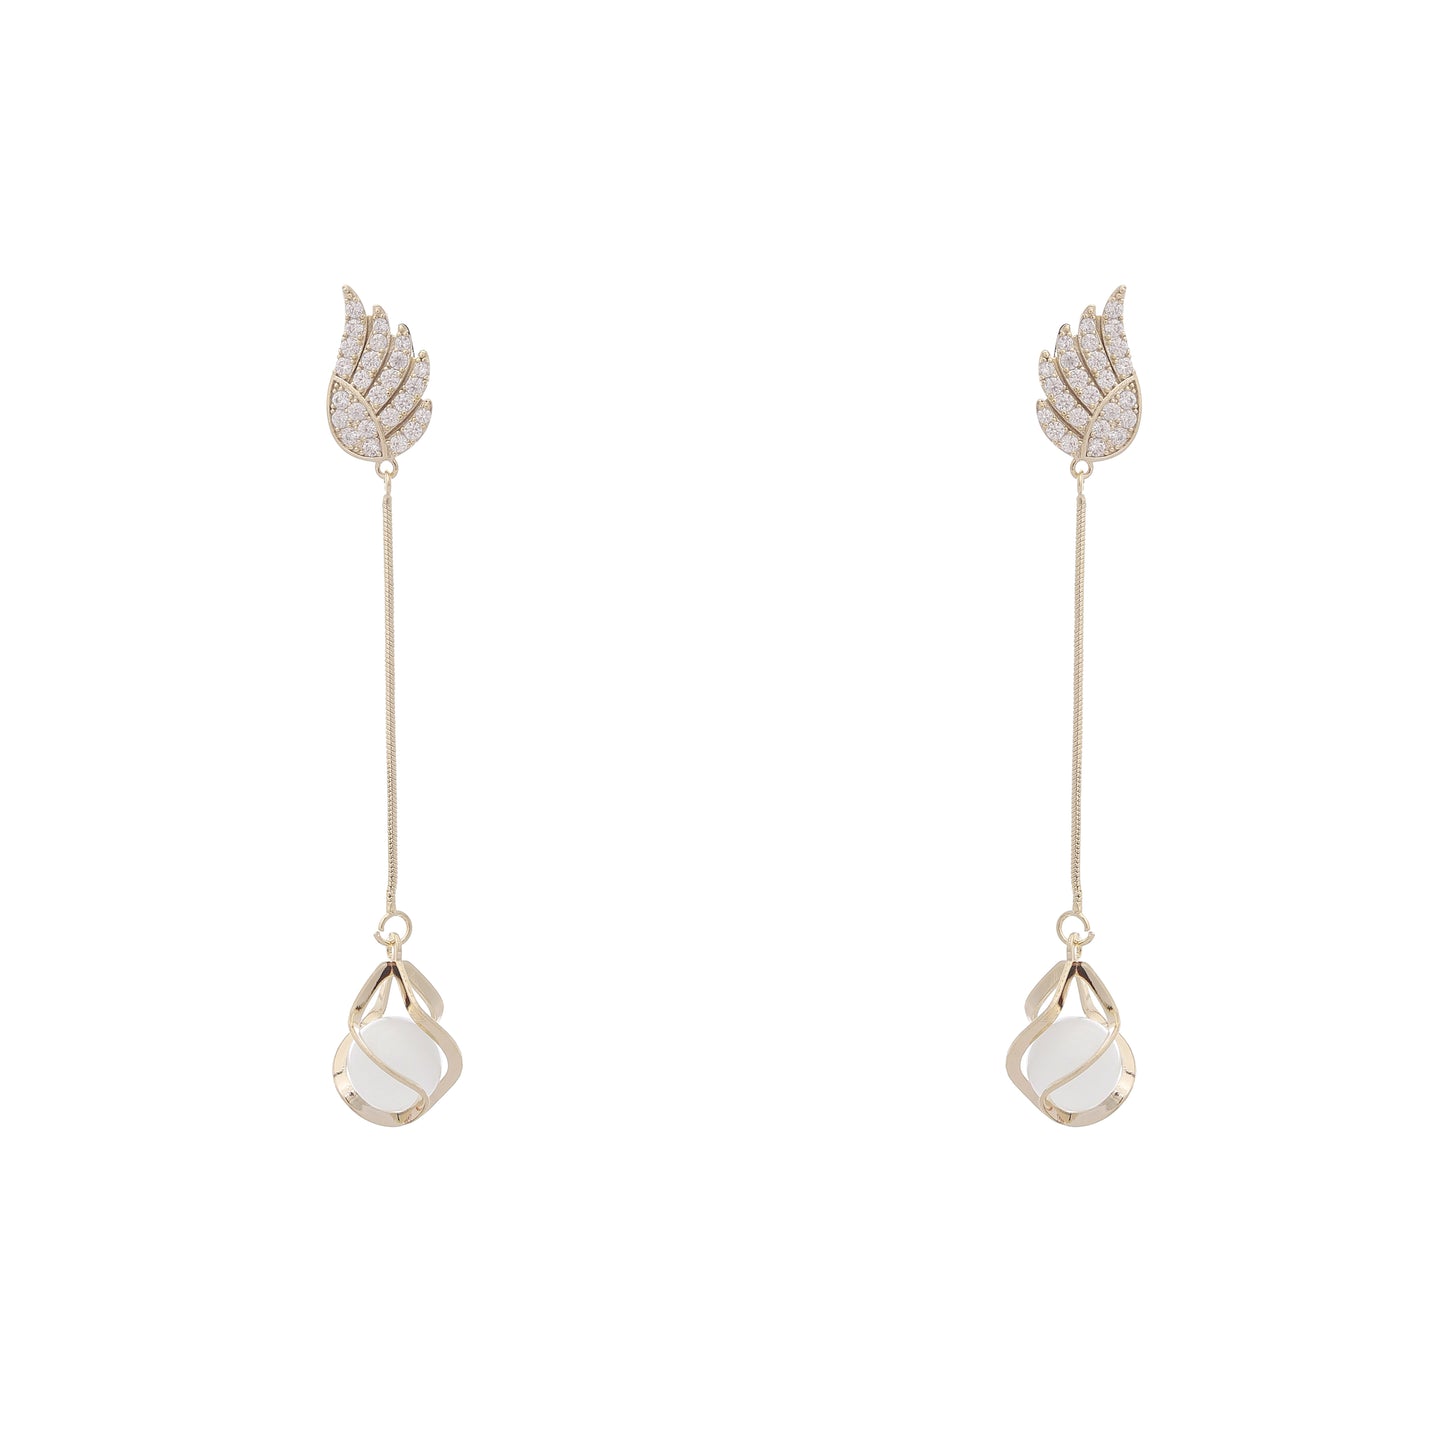 Swan Rhinestone Earrings